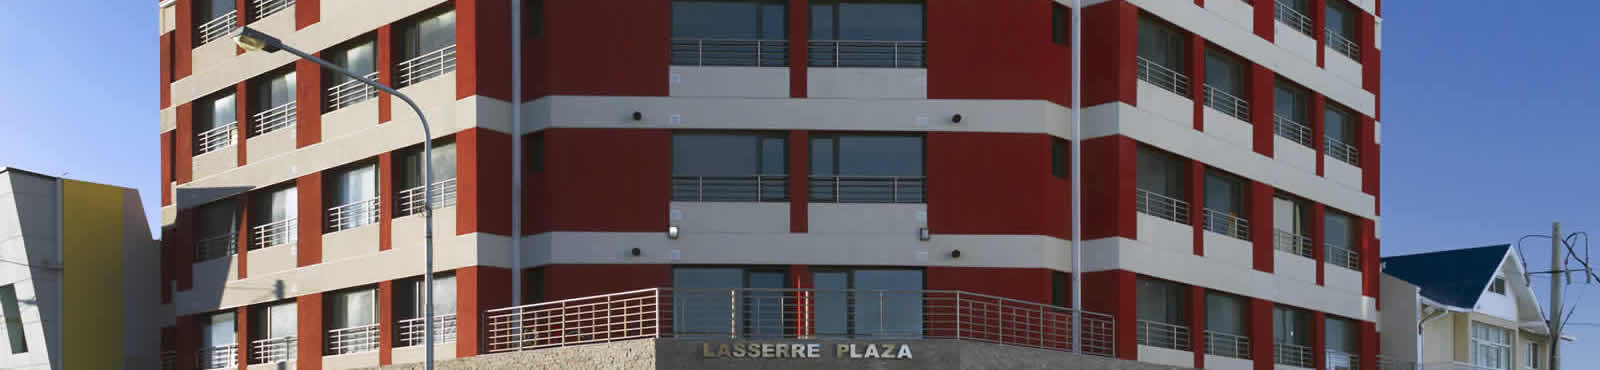 Lasserre Plaza